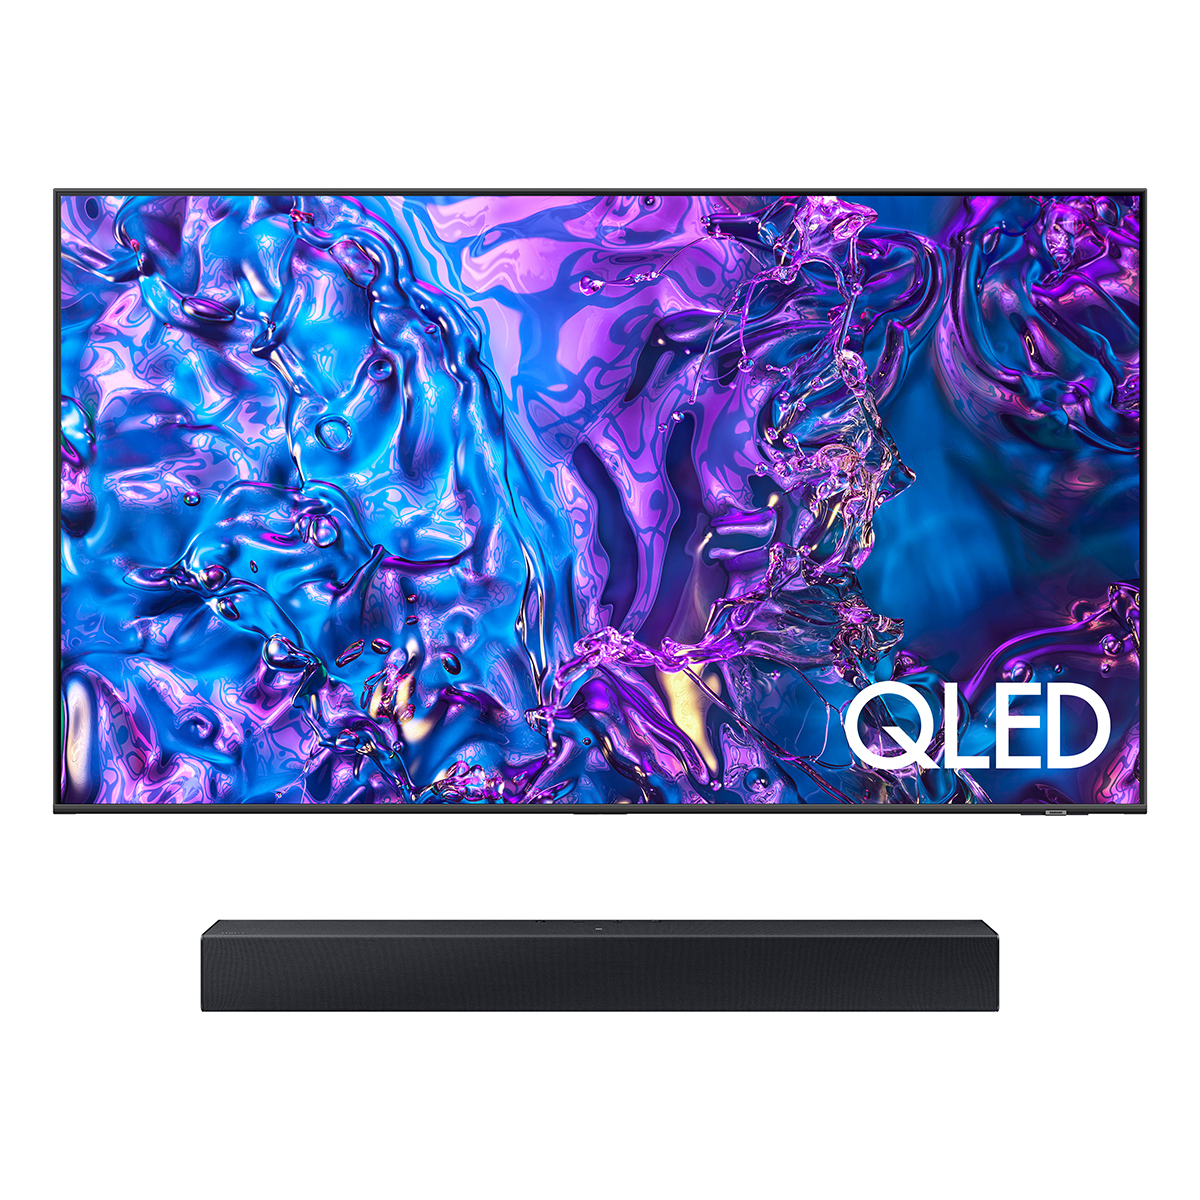 삼성 QLED TV KQ75QD70AFXKR 189cm (75) + C400